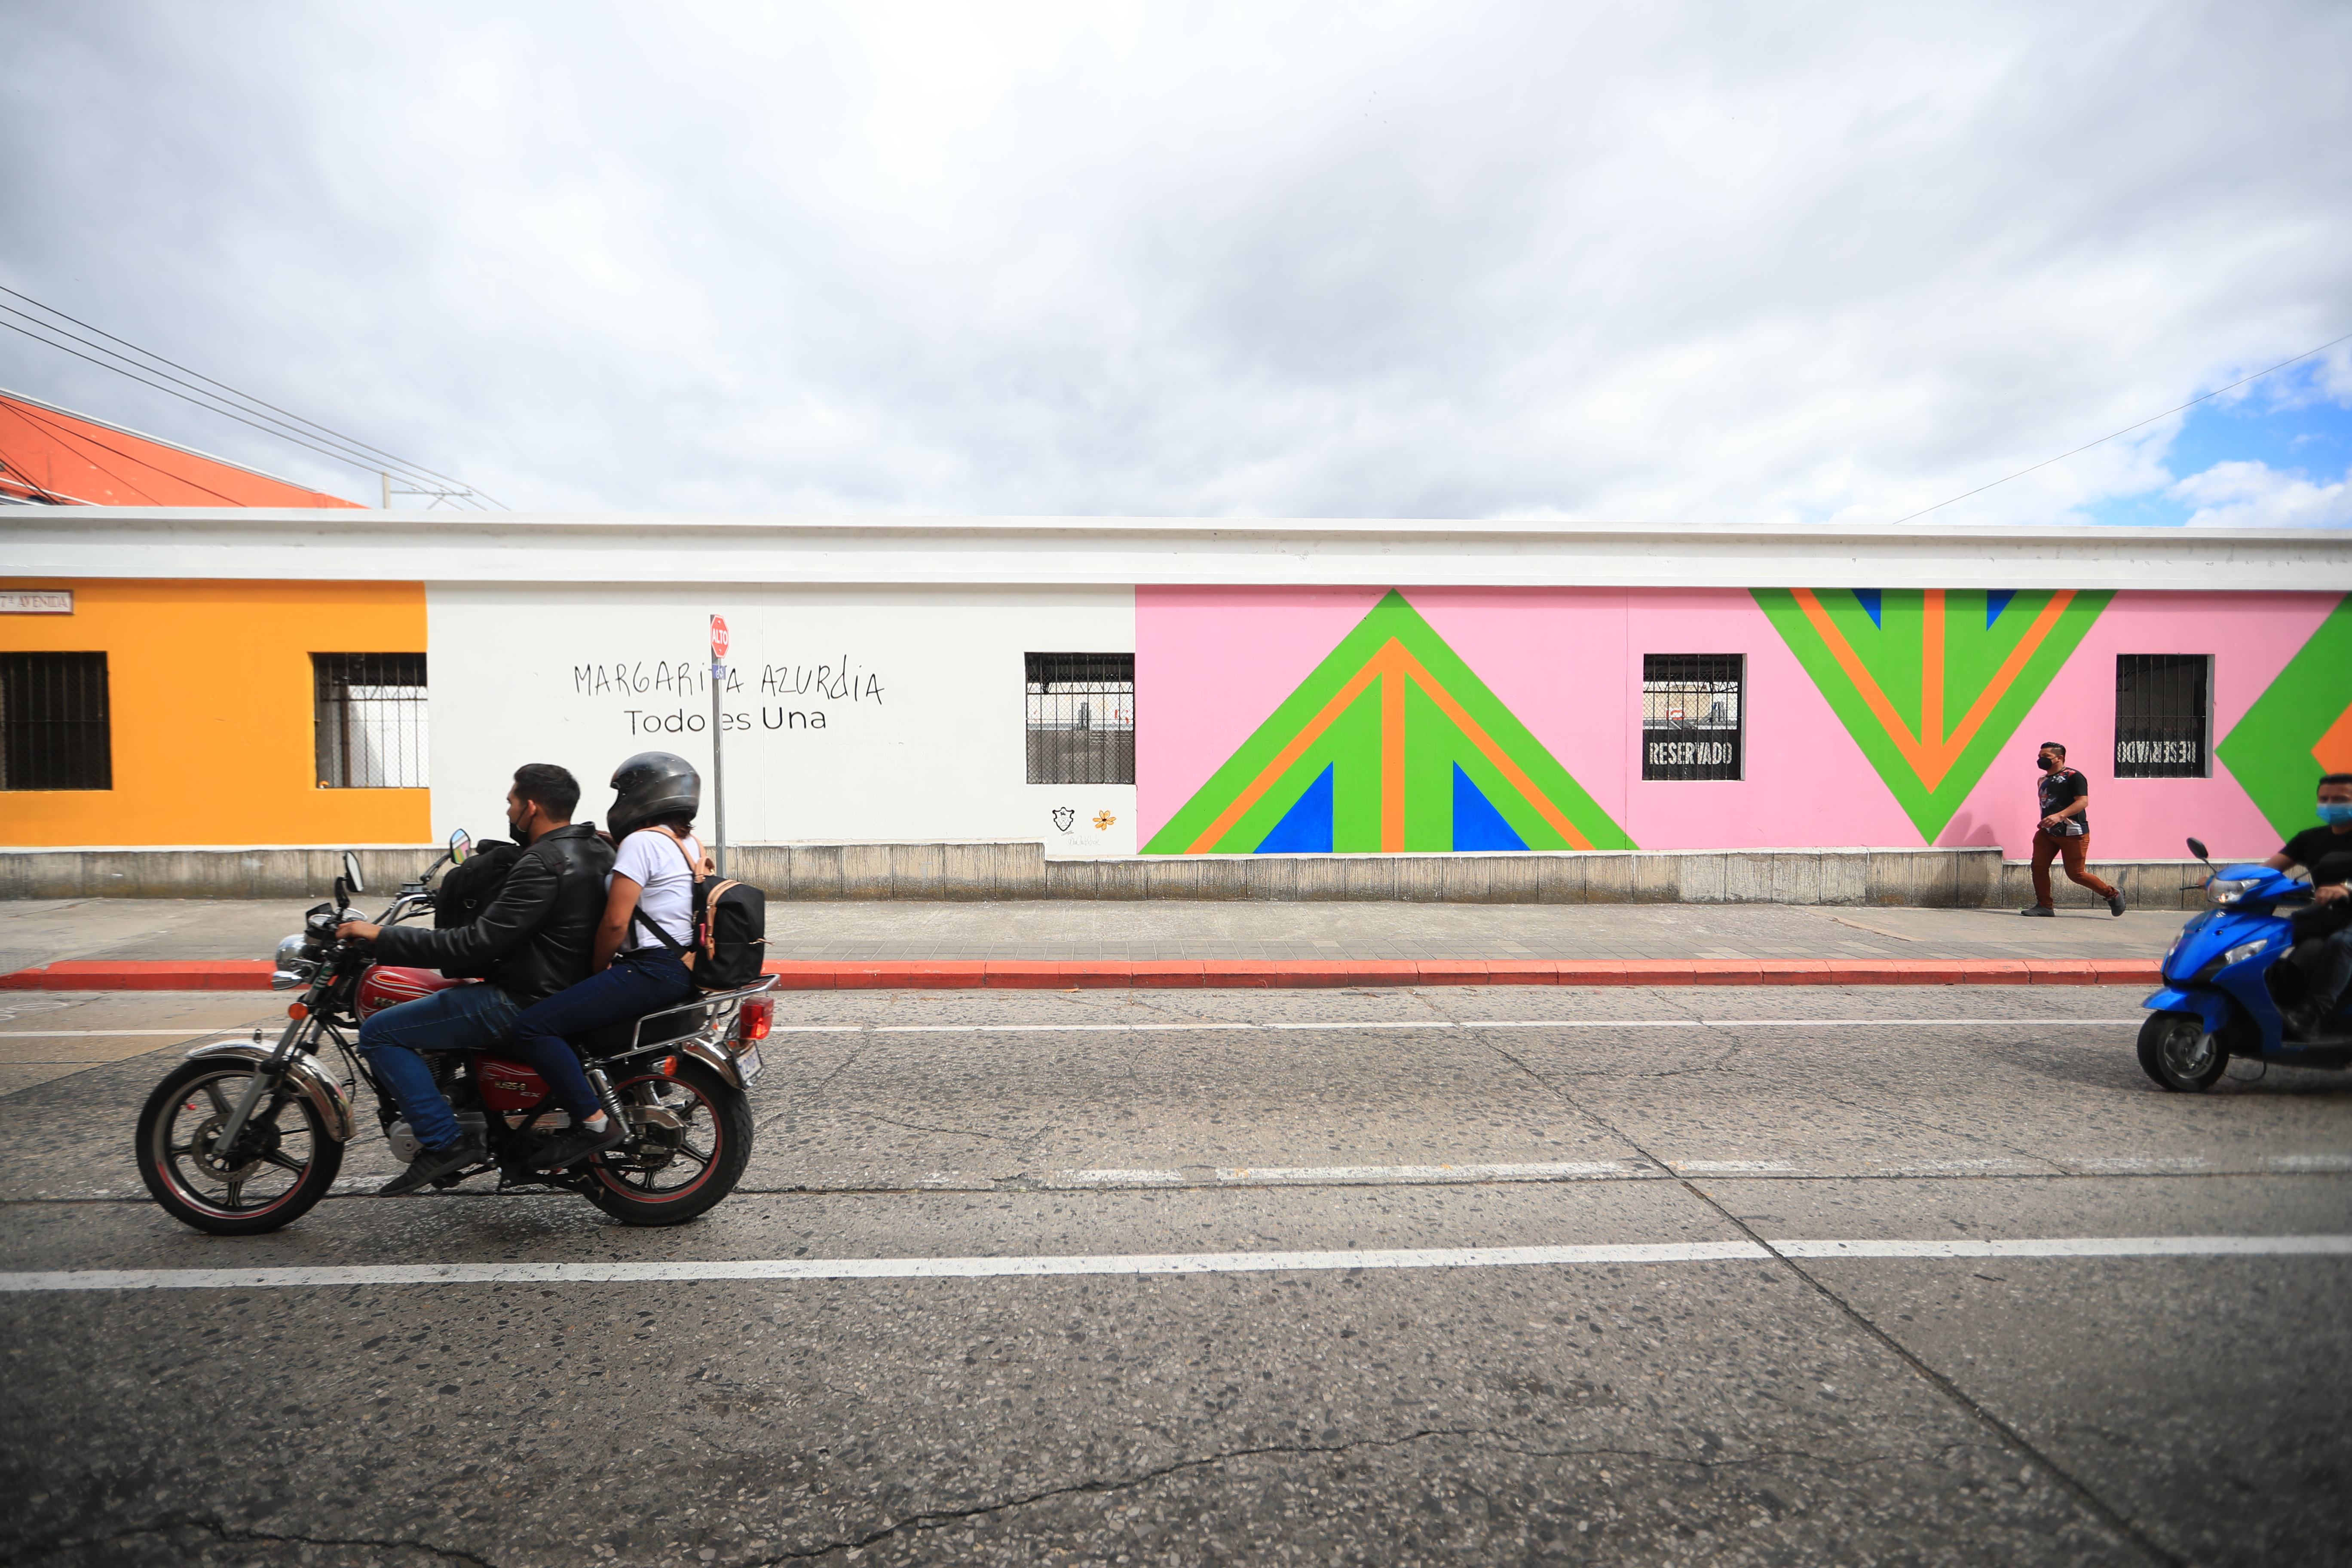 El mural dedicado a Margarita Azurdia se encuentra en la 7 avenida y 13 calle, zona 1.